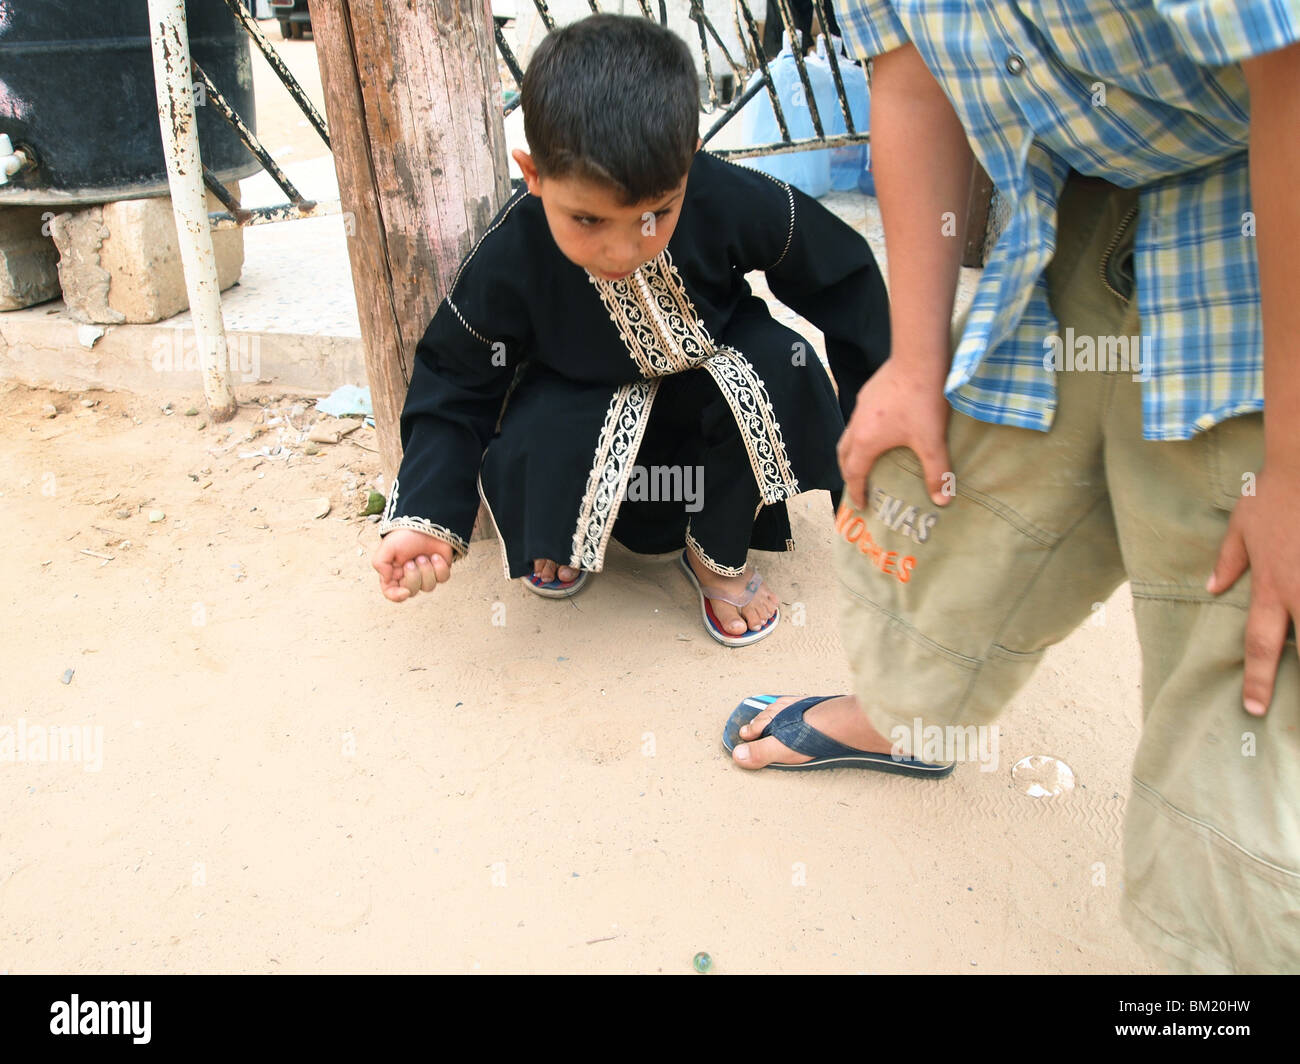 Les garçons jouer avec des billes à Tripoli, Libye Banque D'Images